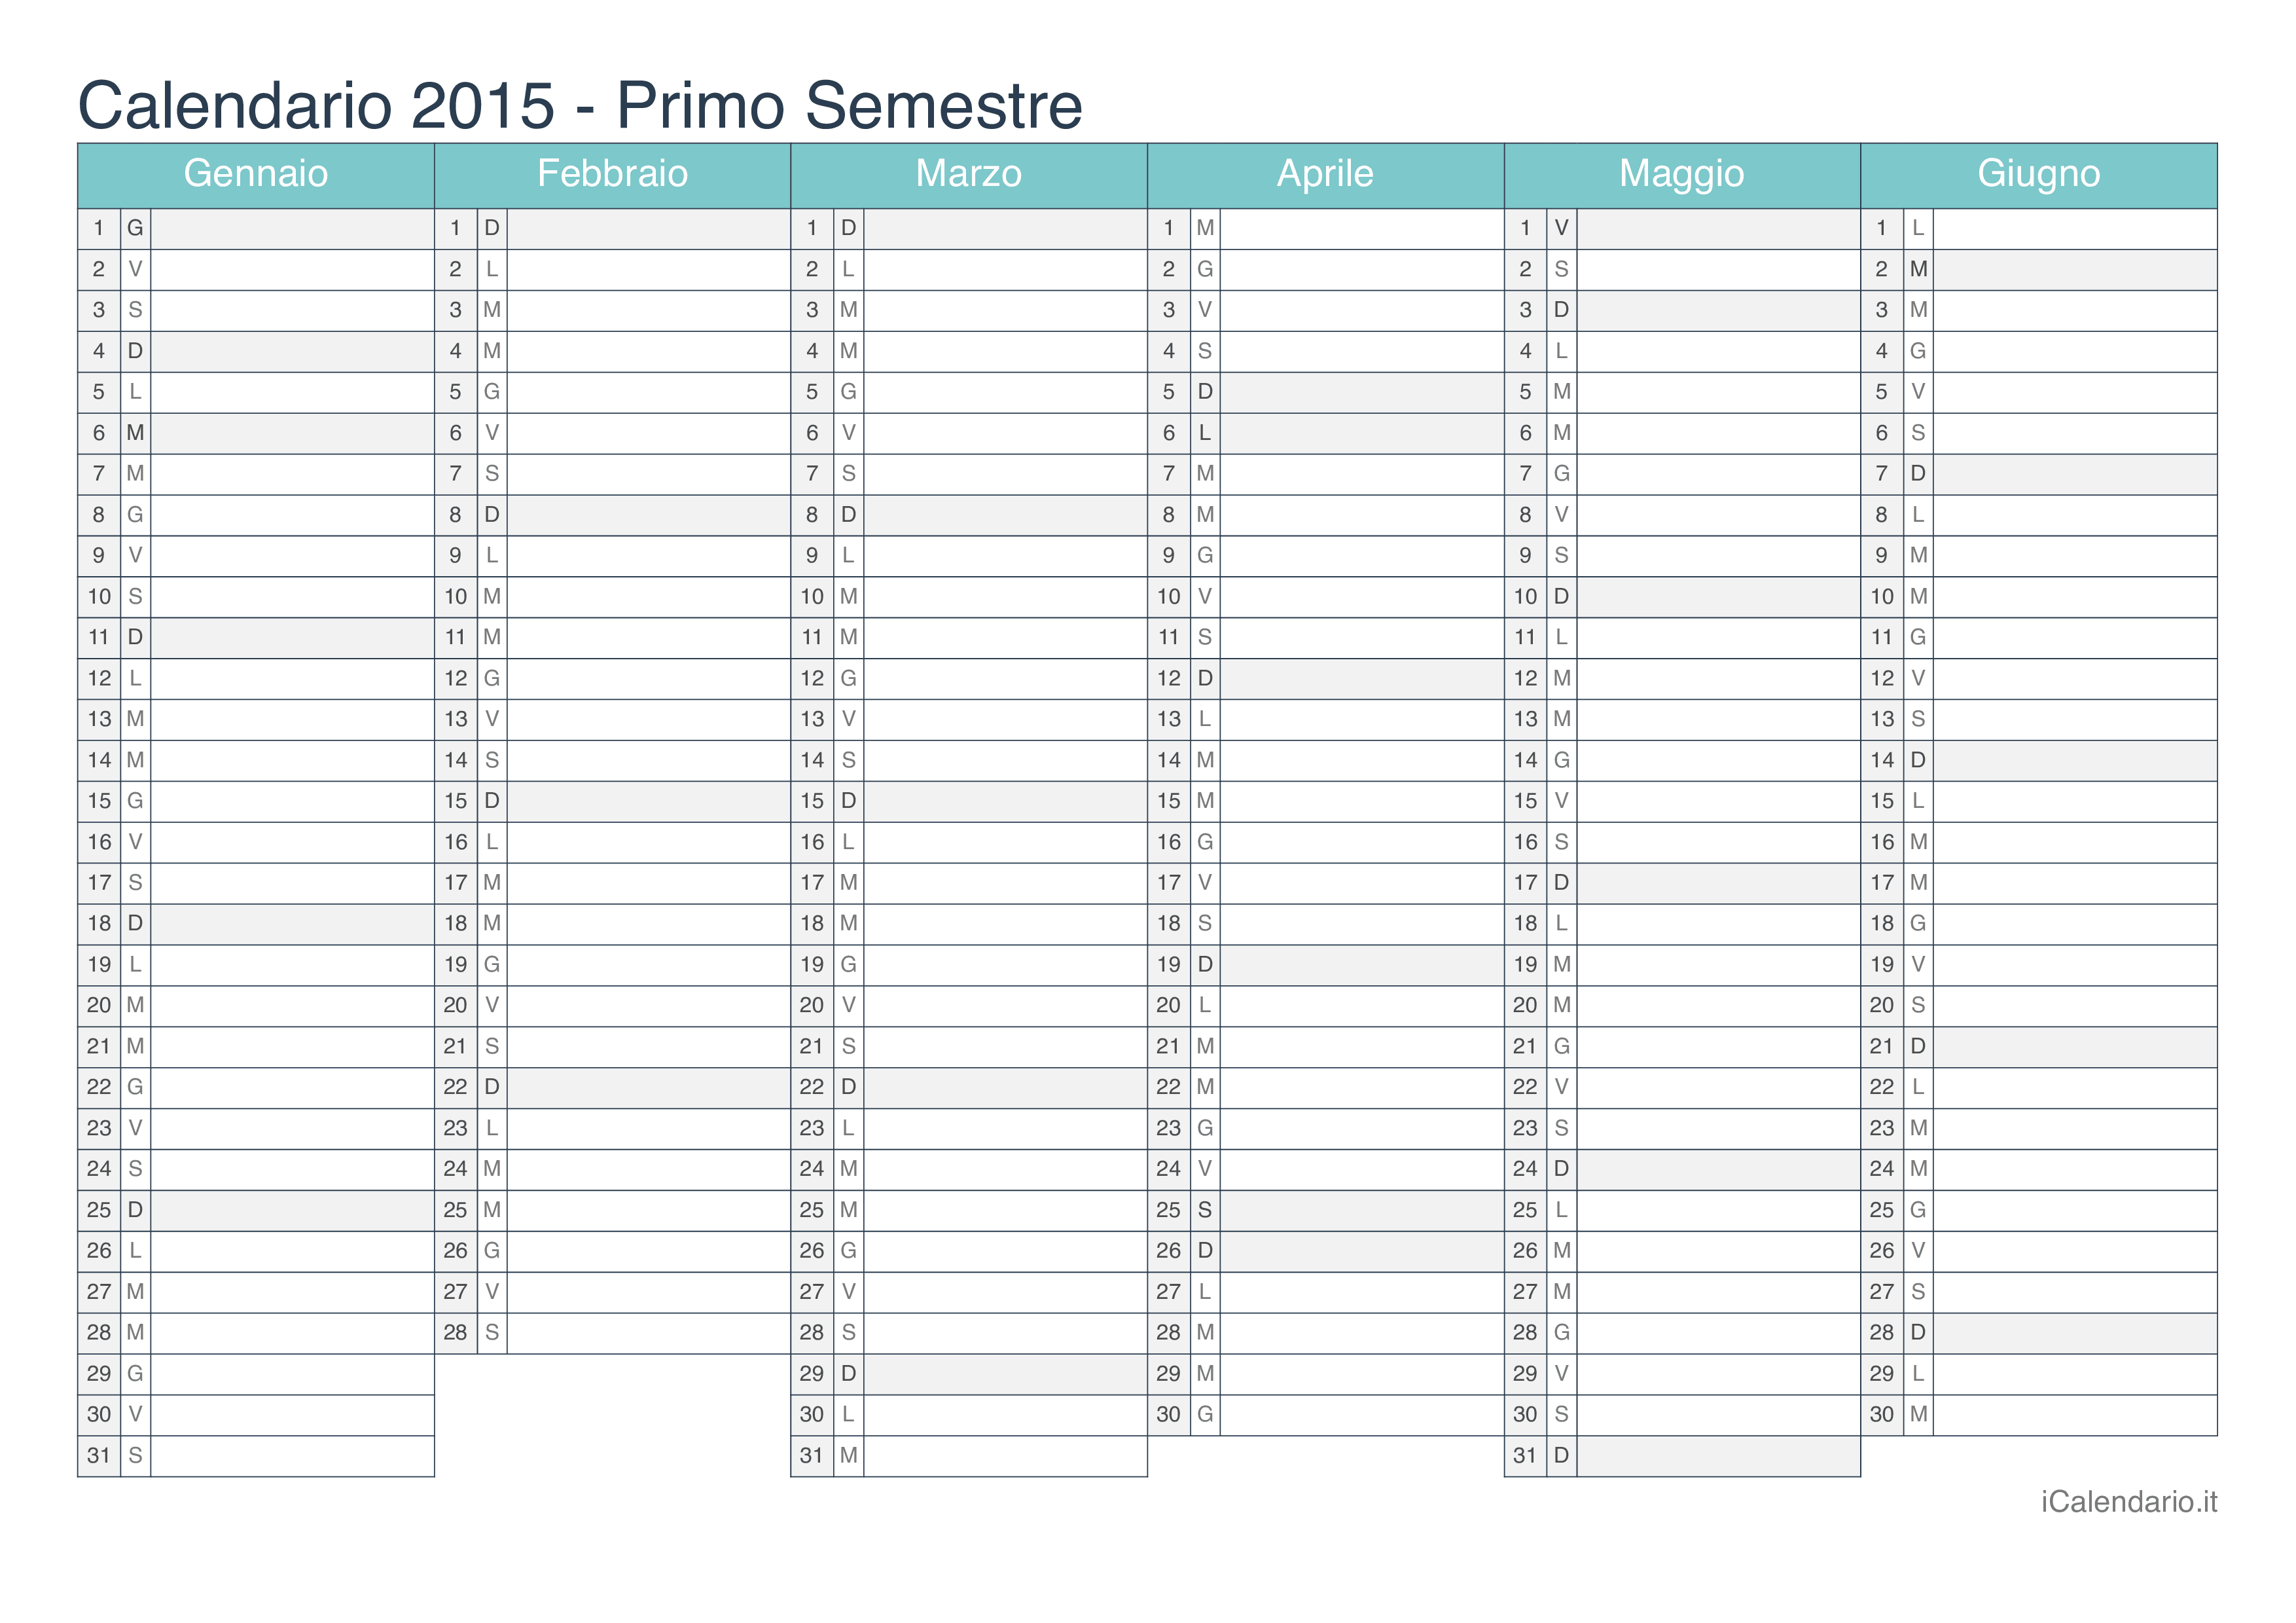 Calendario semestrale 2015 - Turchese